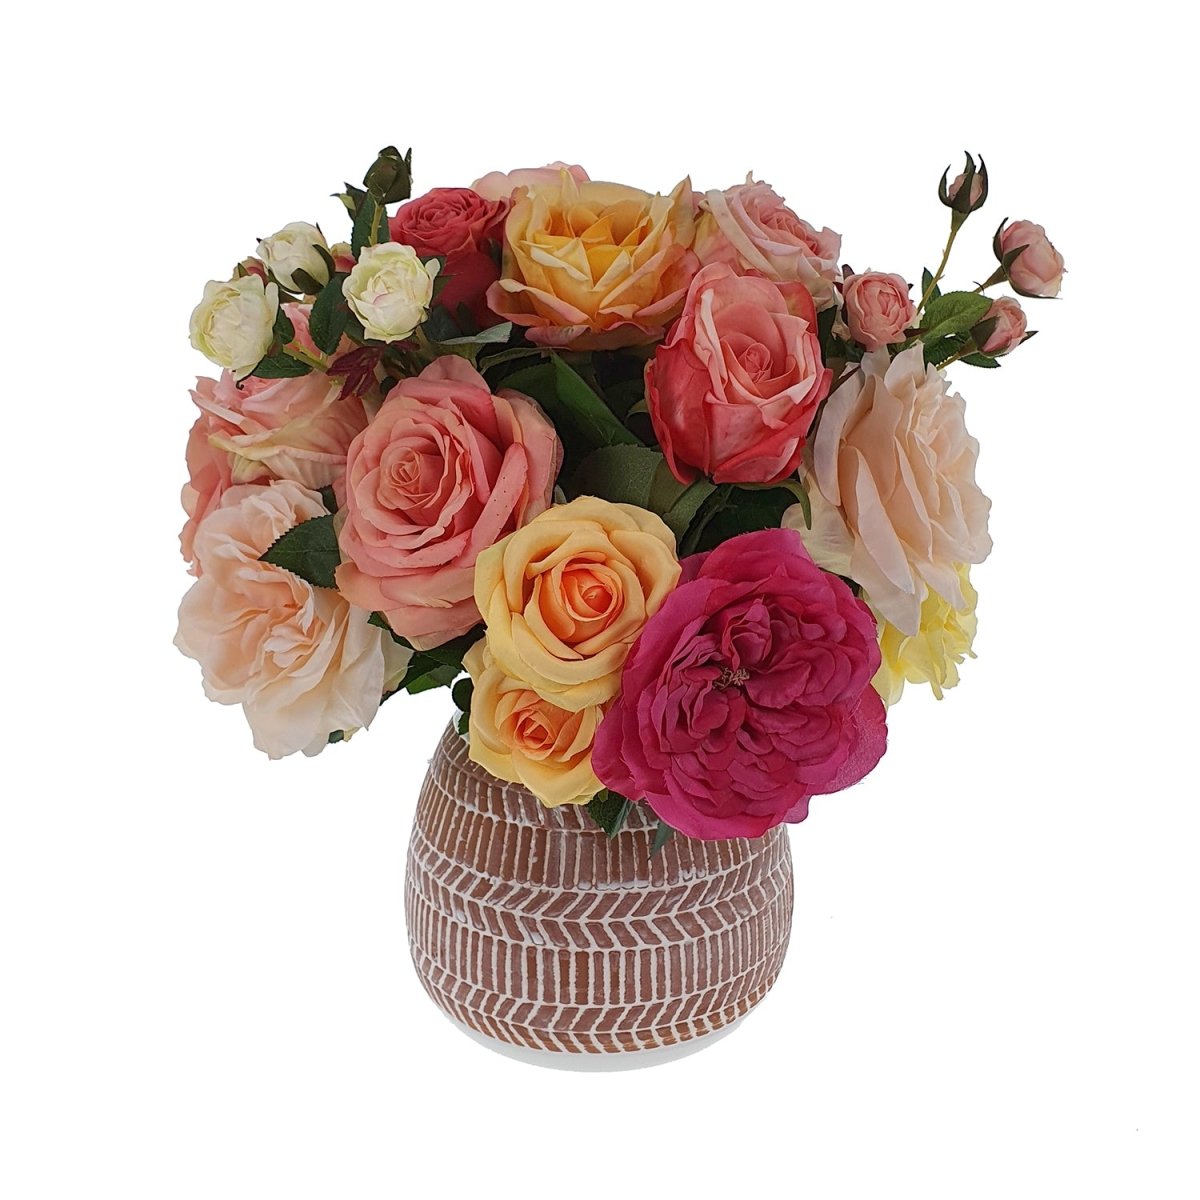 Viv! Home Luxuries Boeket Rose Garden - inclusief vaas - perzik roze geel wit - Topkwaliteit - Viv! Home Luxuries